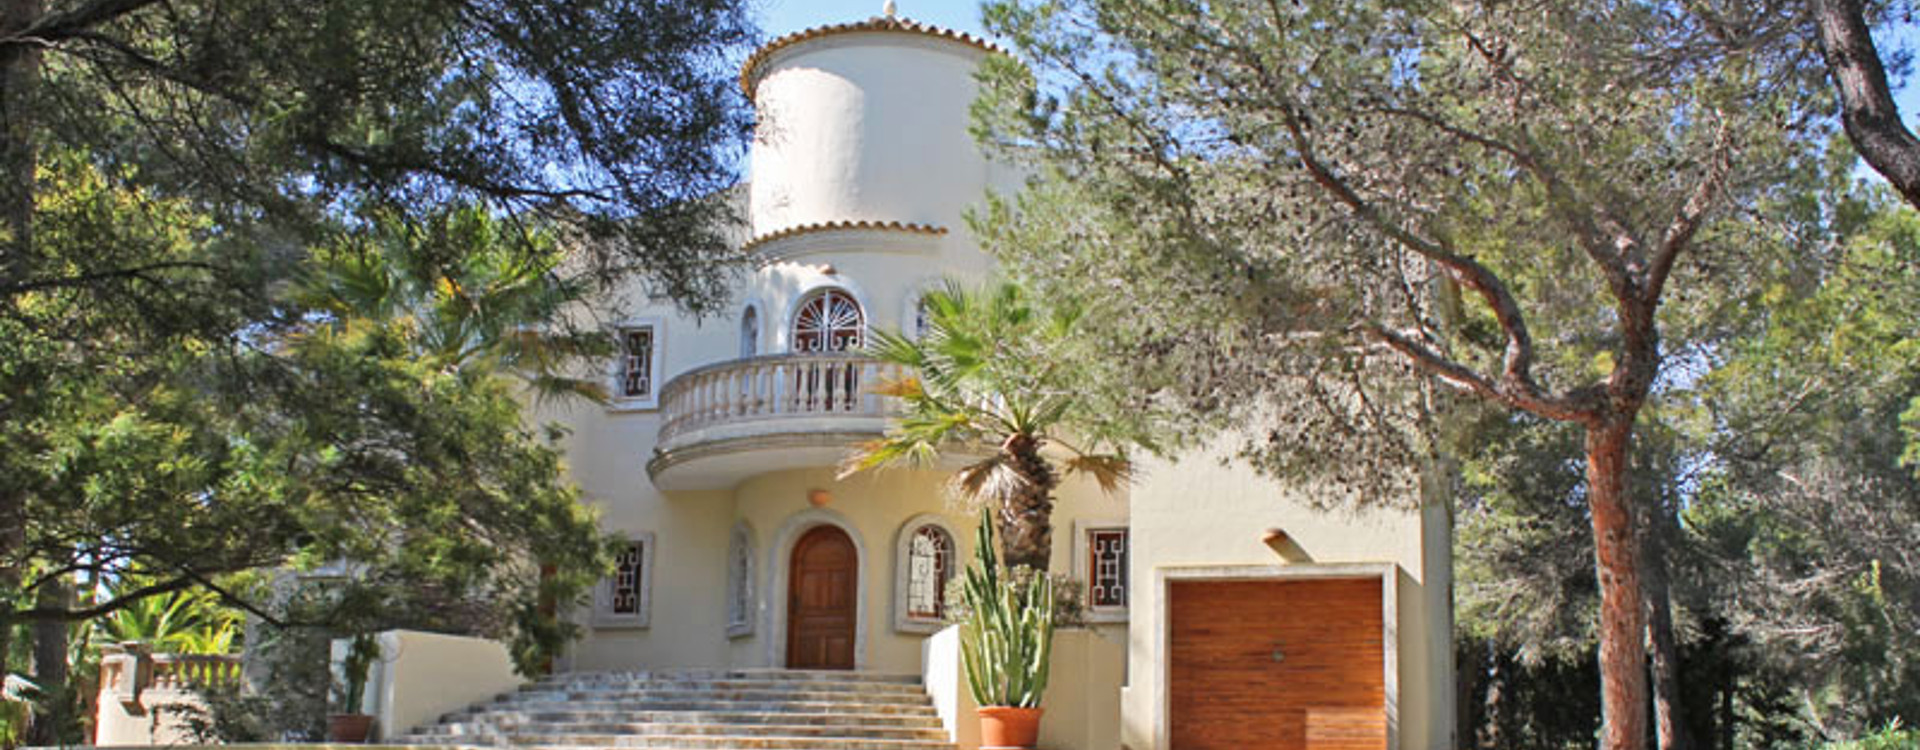 Villa Llenya te huur op ibiza - zijaanzicht 